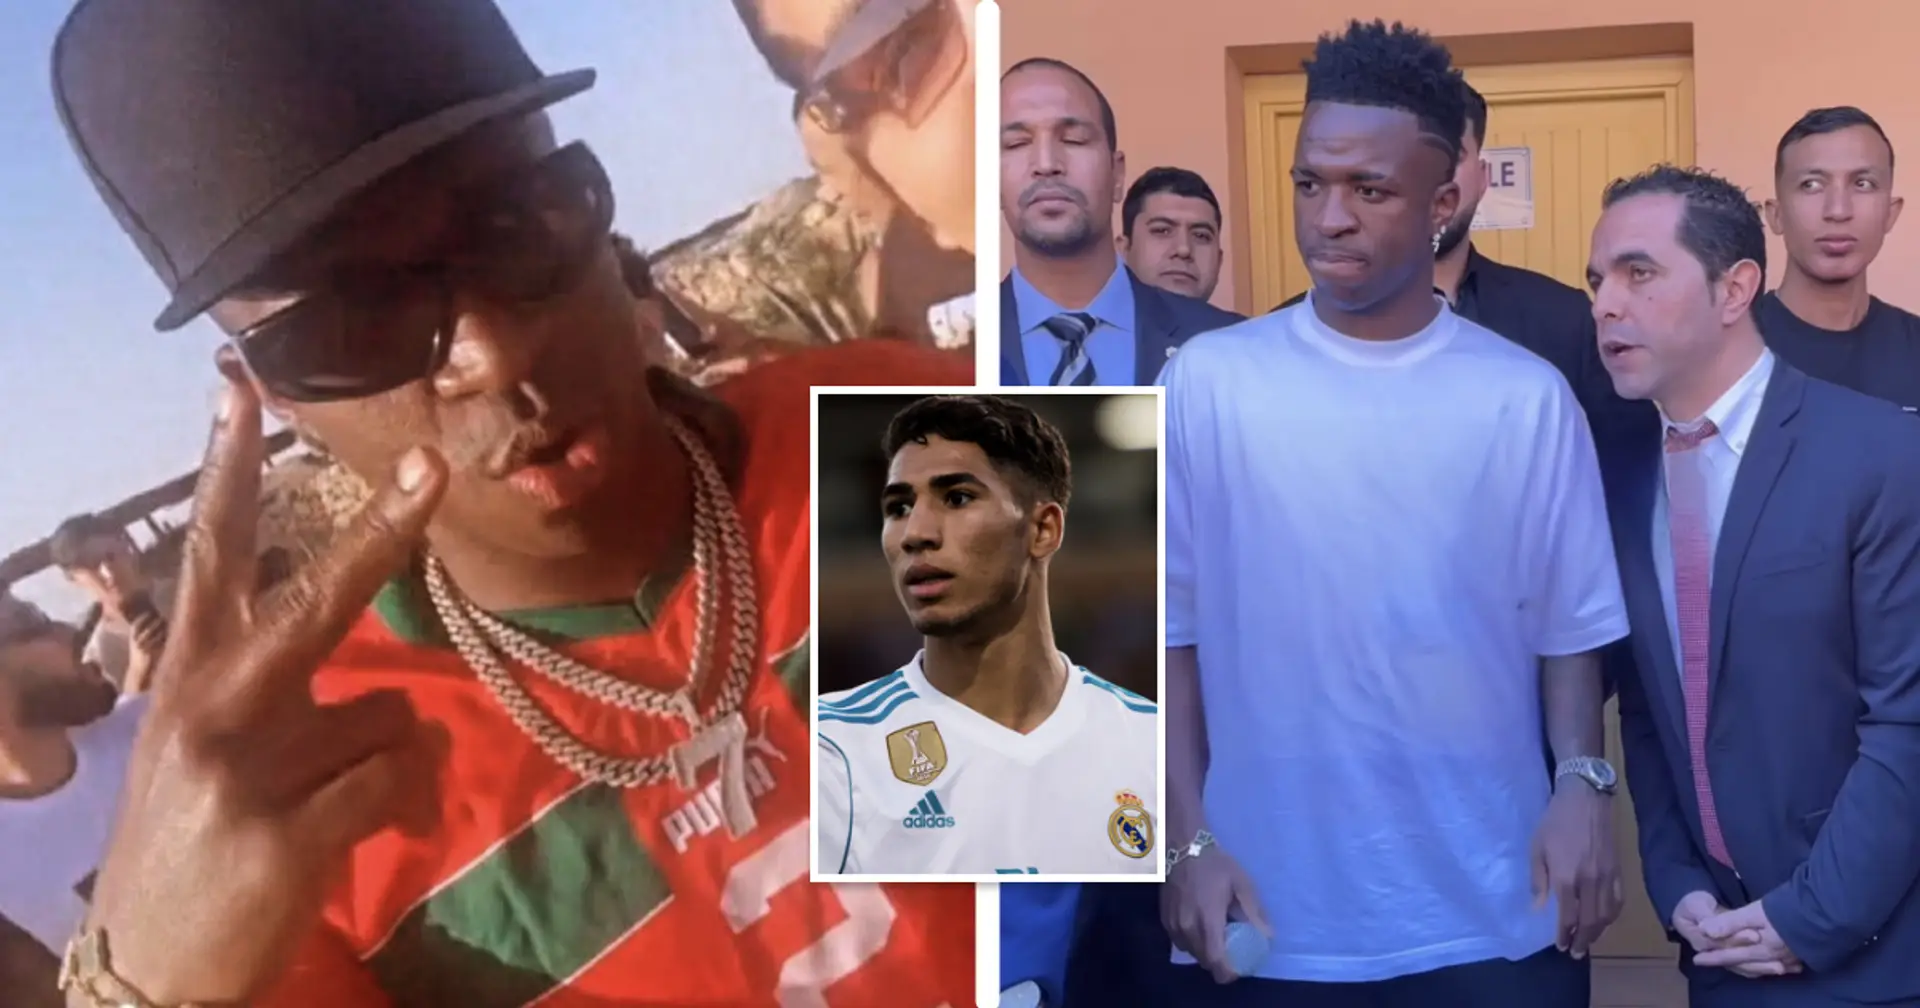 L'agent Vini de retour : Le Brésilien aperçu portant le maillot d'Hakimi au Maroc